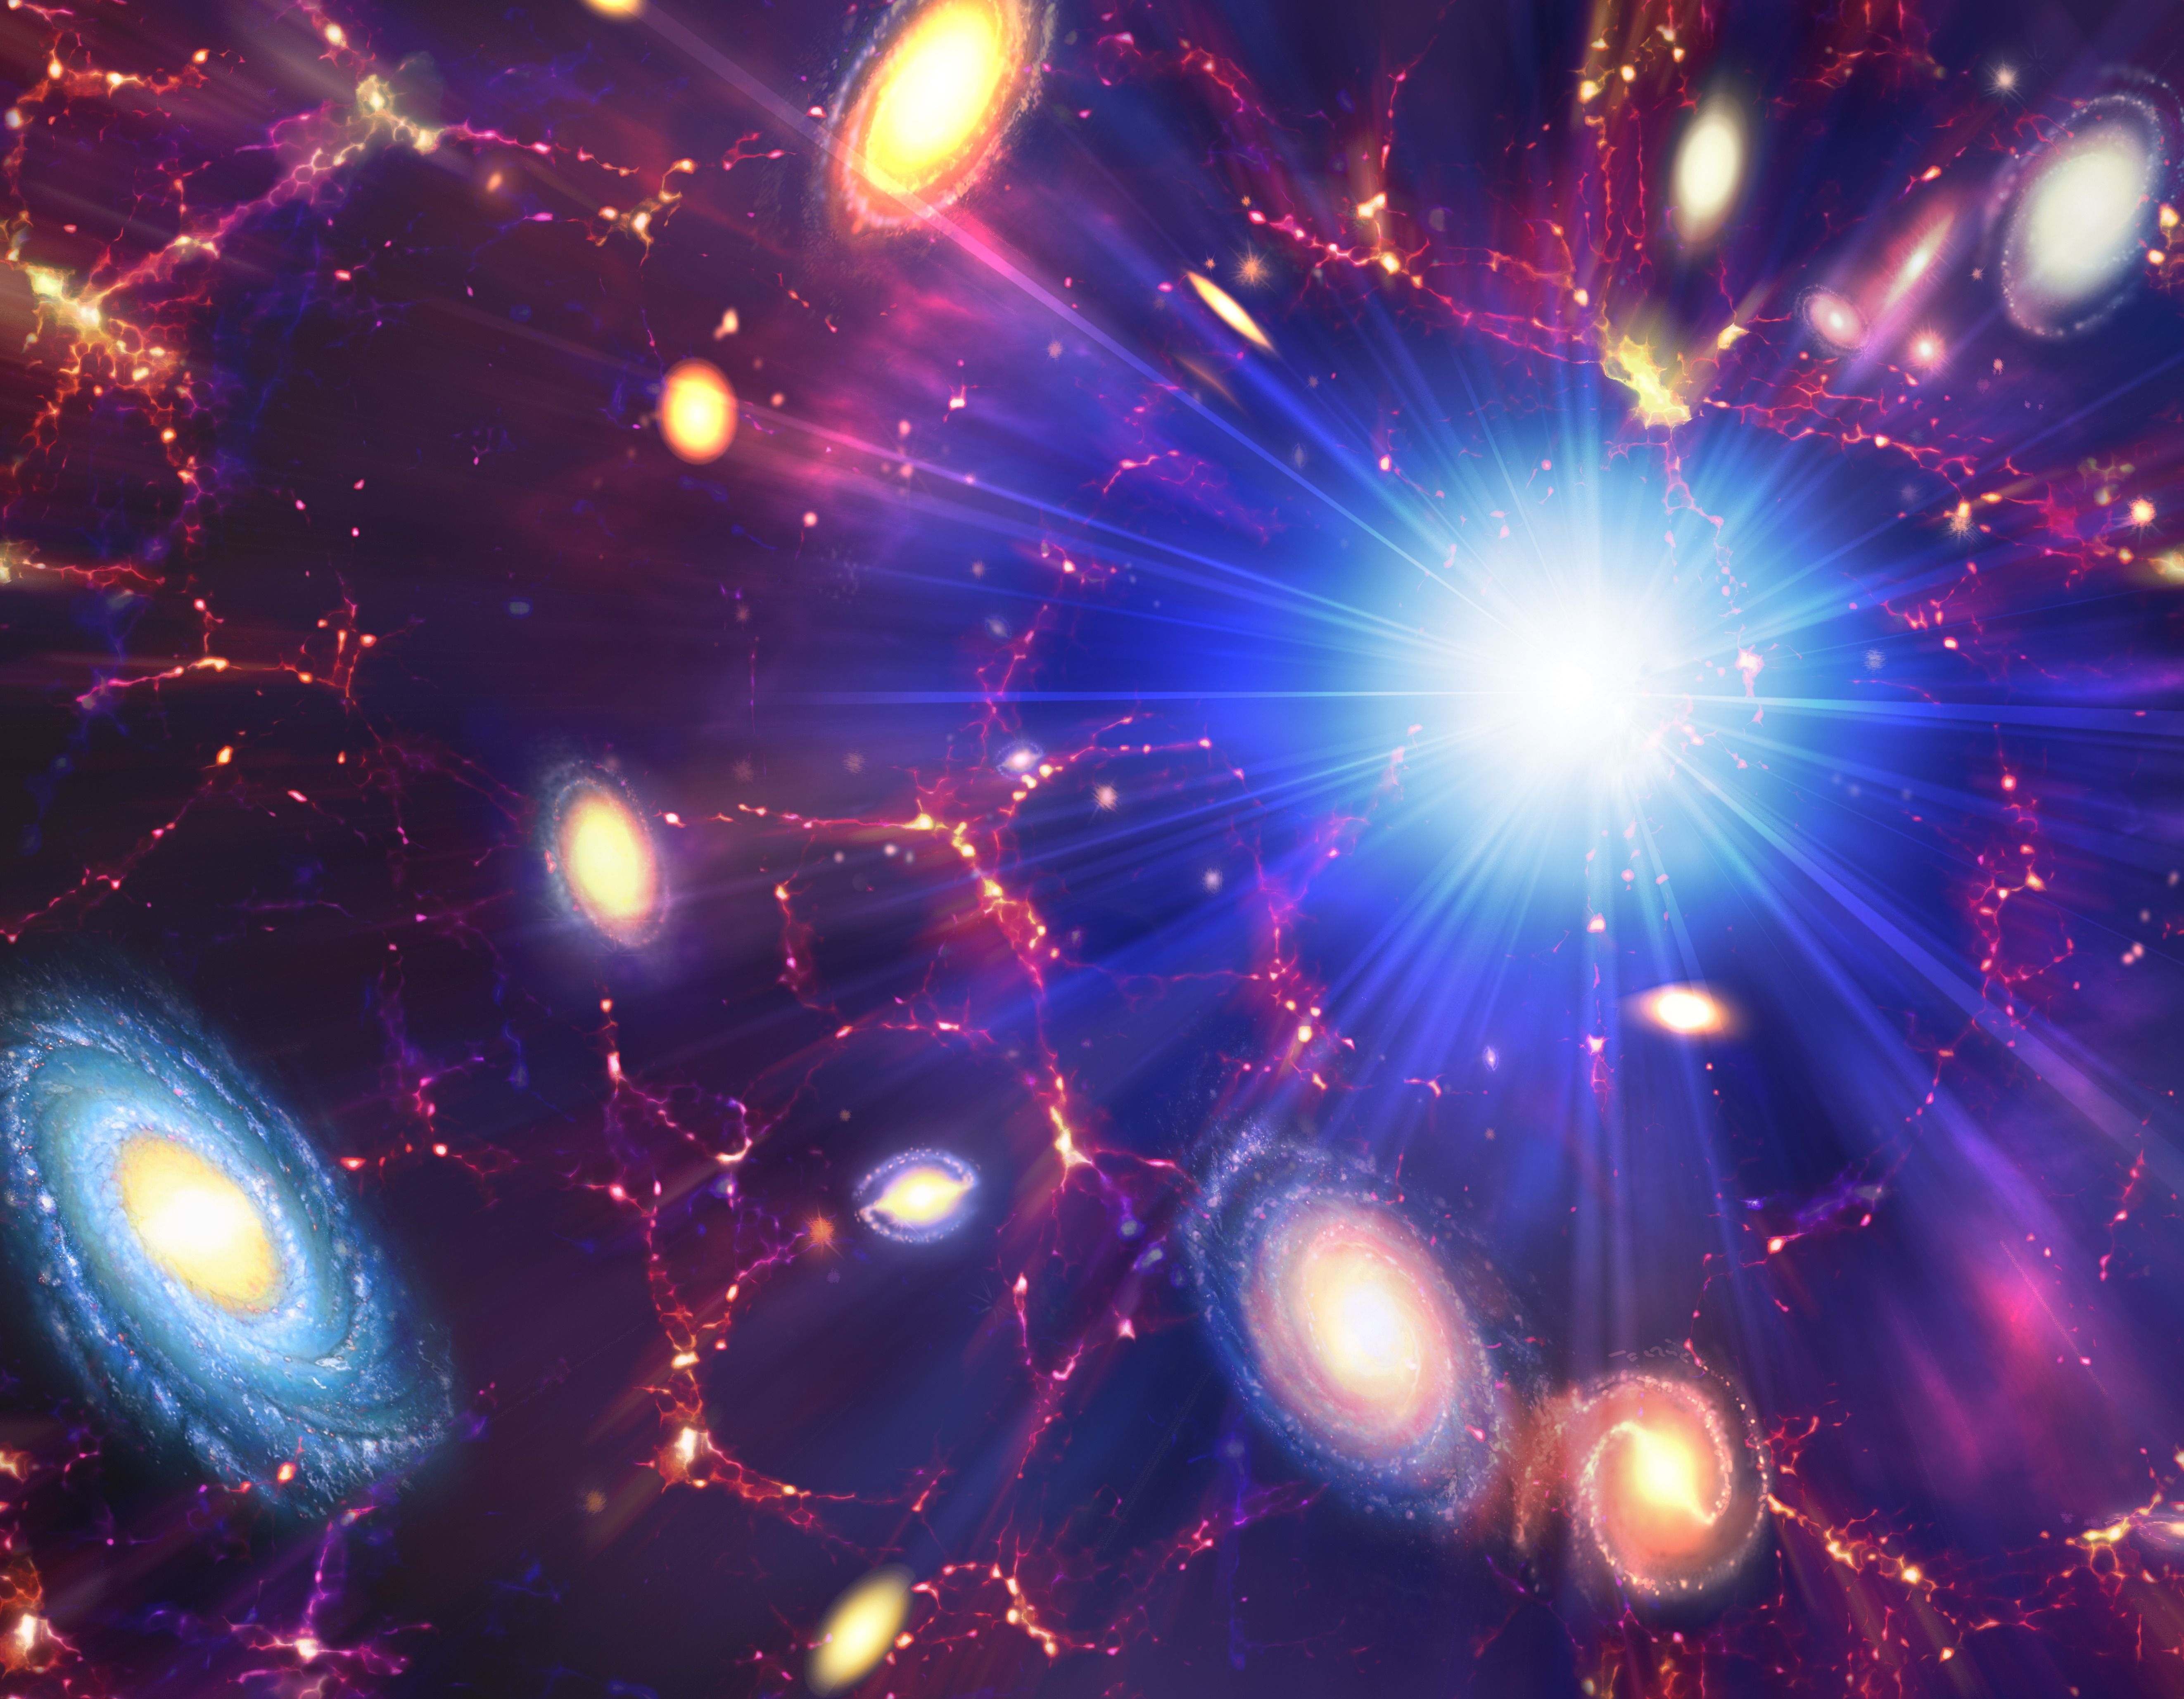 There May Have Been a Dark Big Bang